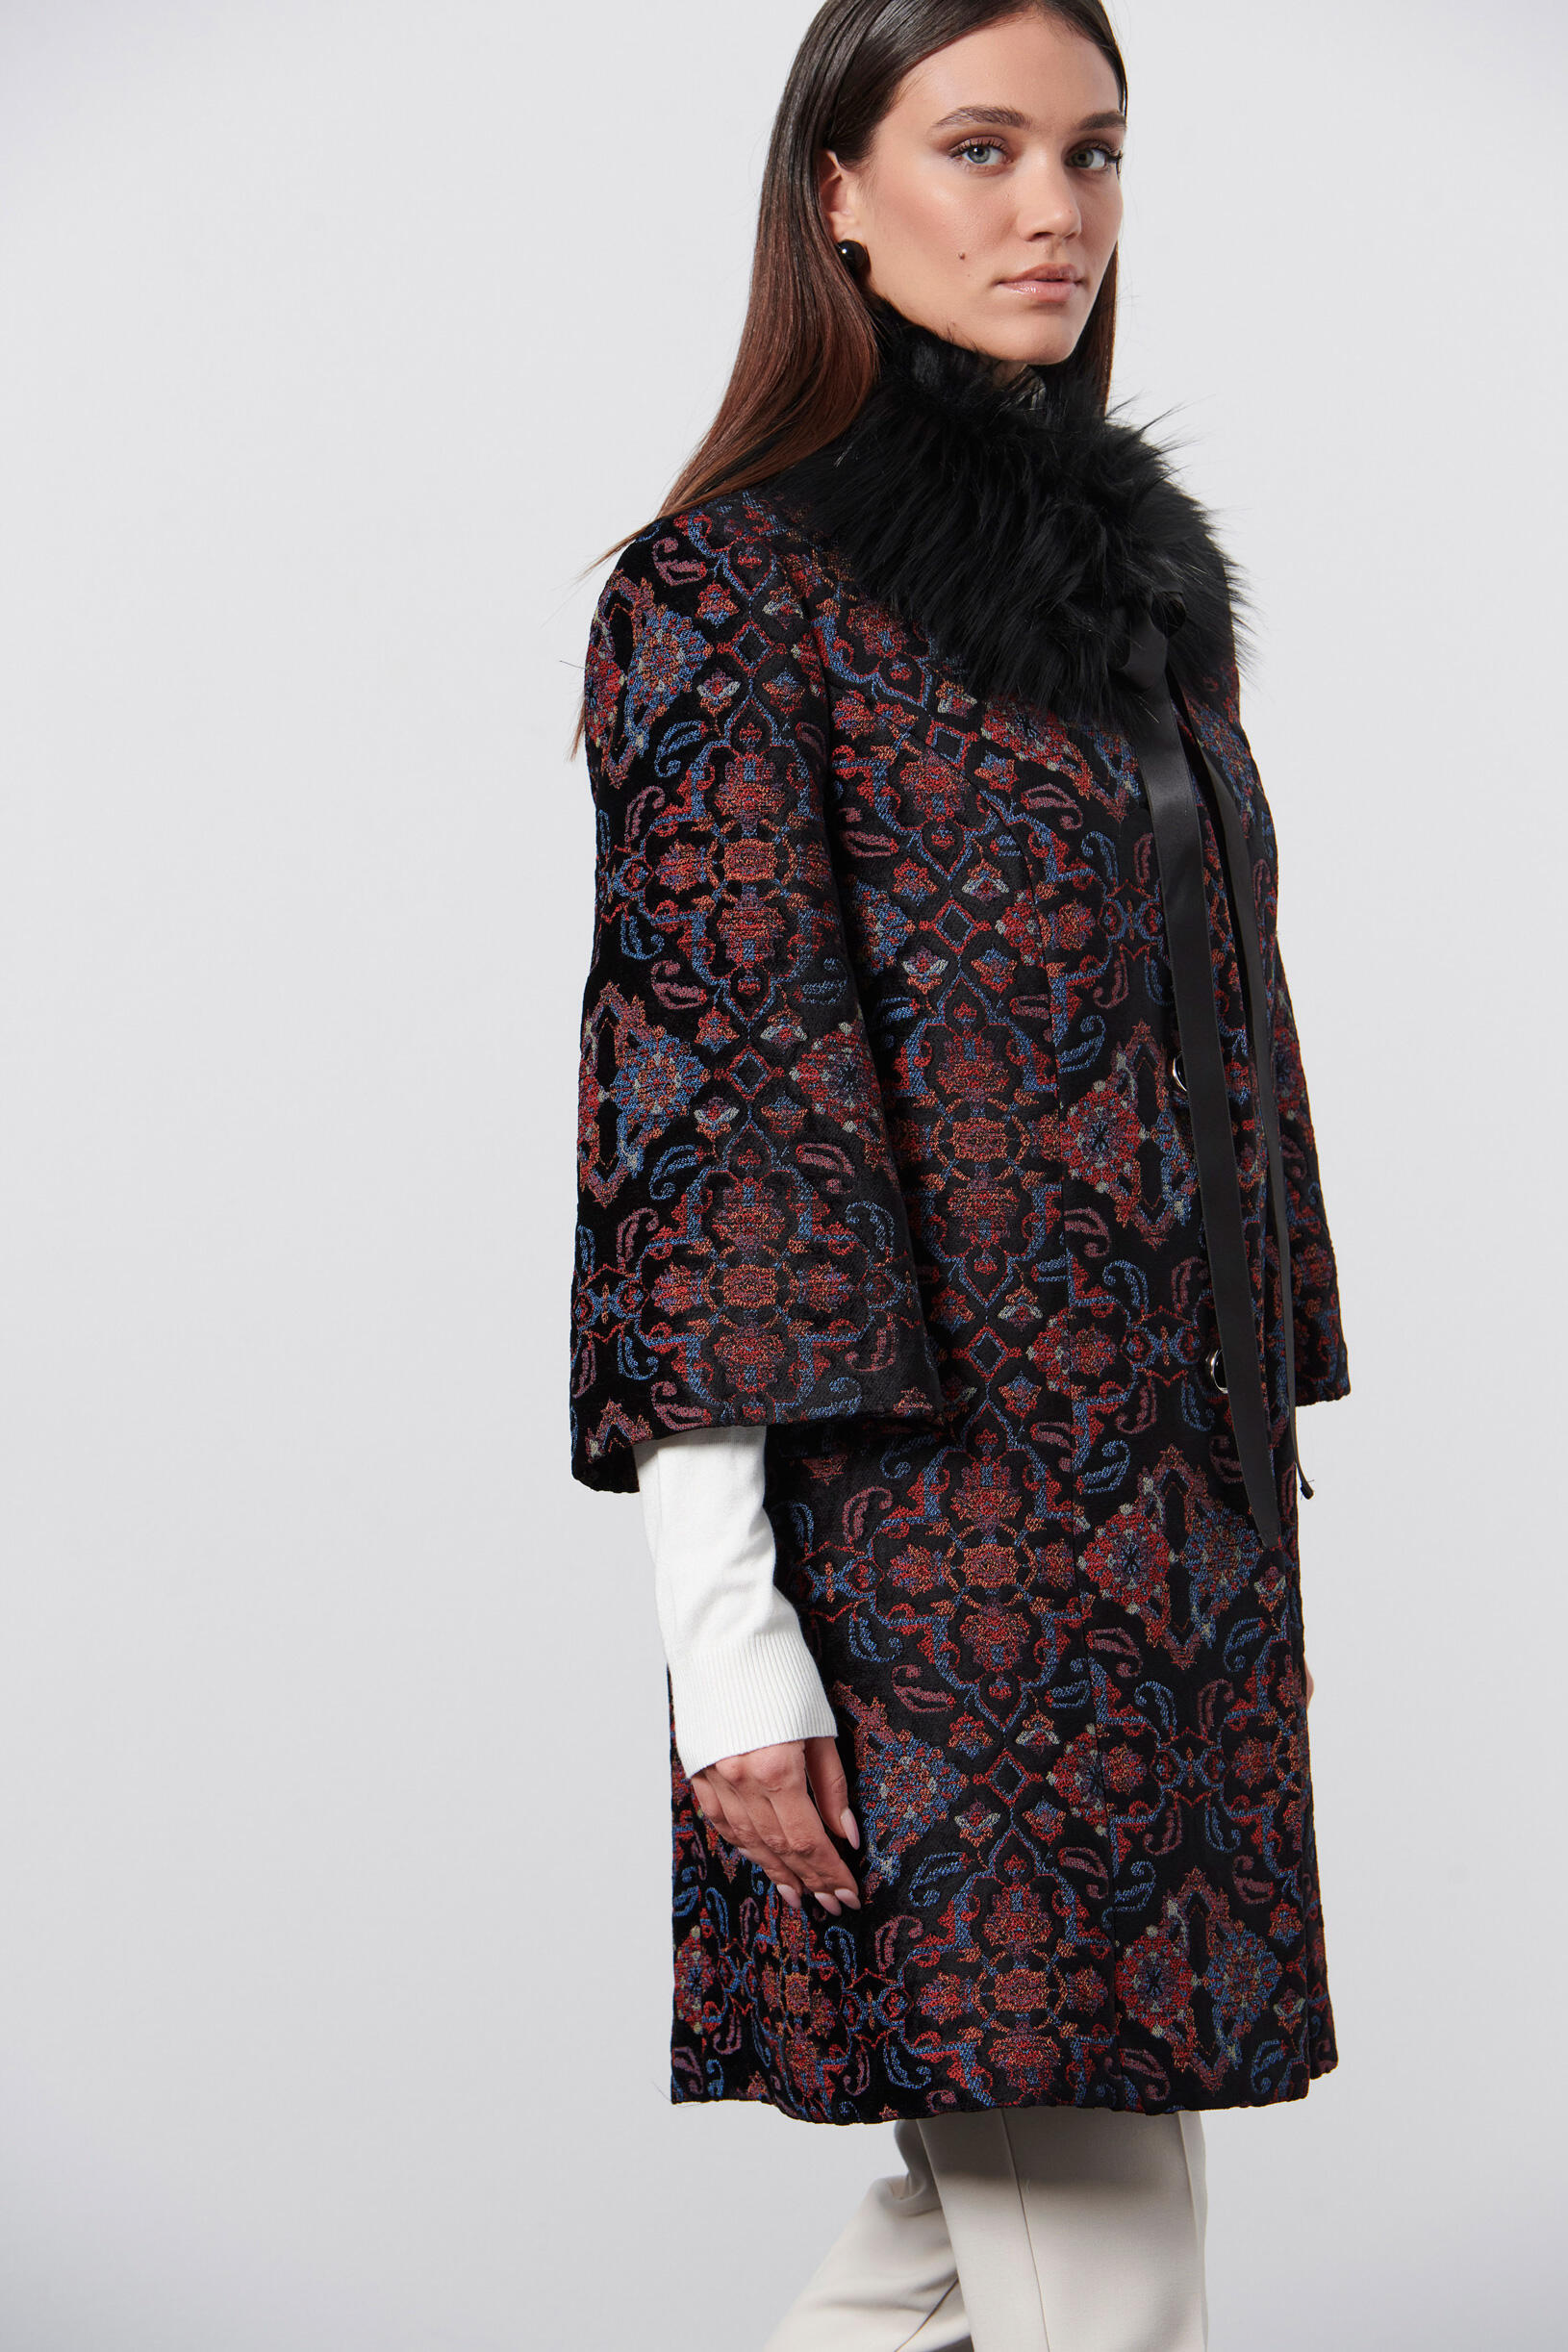 Παλτό μπροκάρ με οικολογική γούνα | Γυναικεία Ρούχα Bill Cost